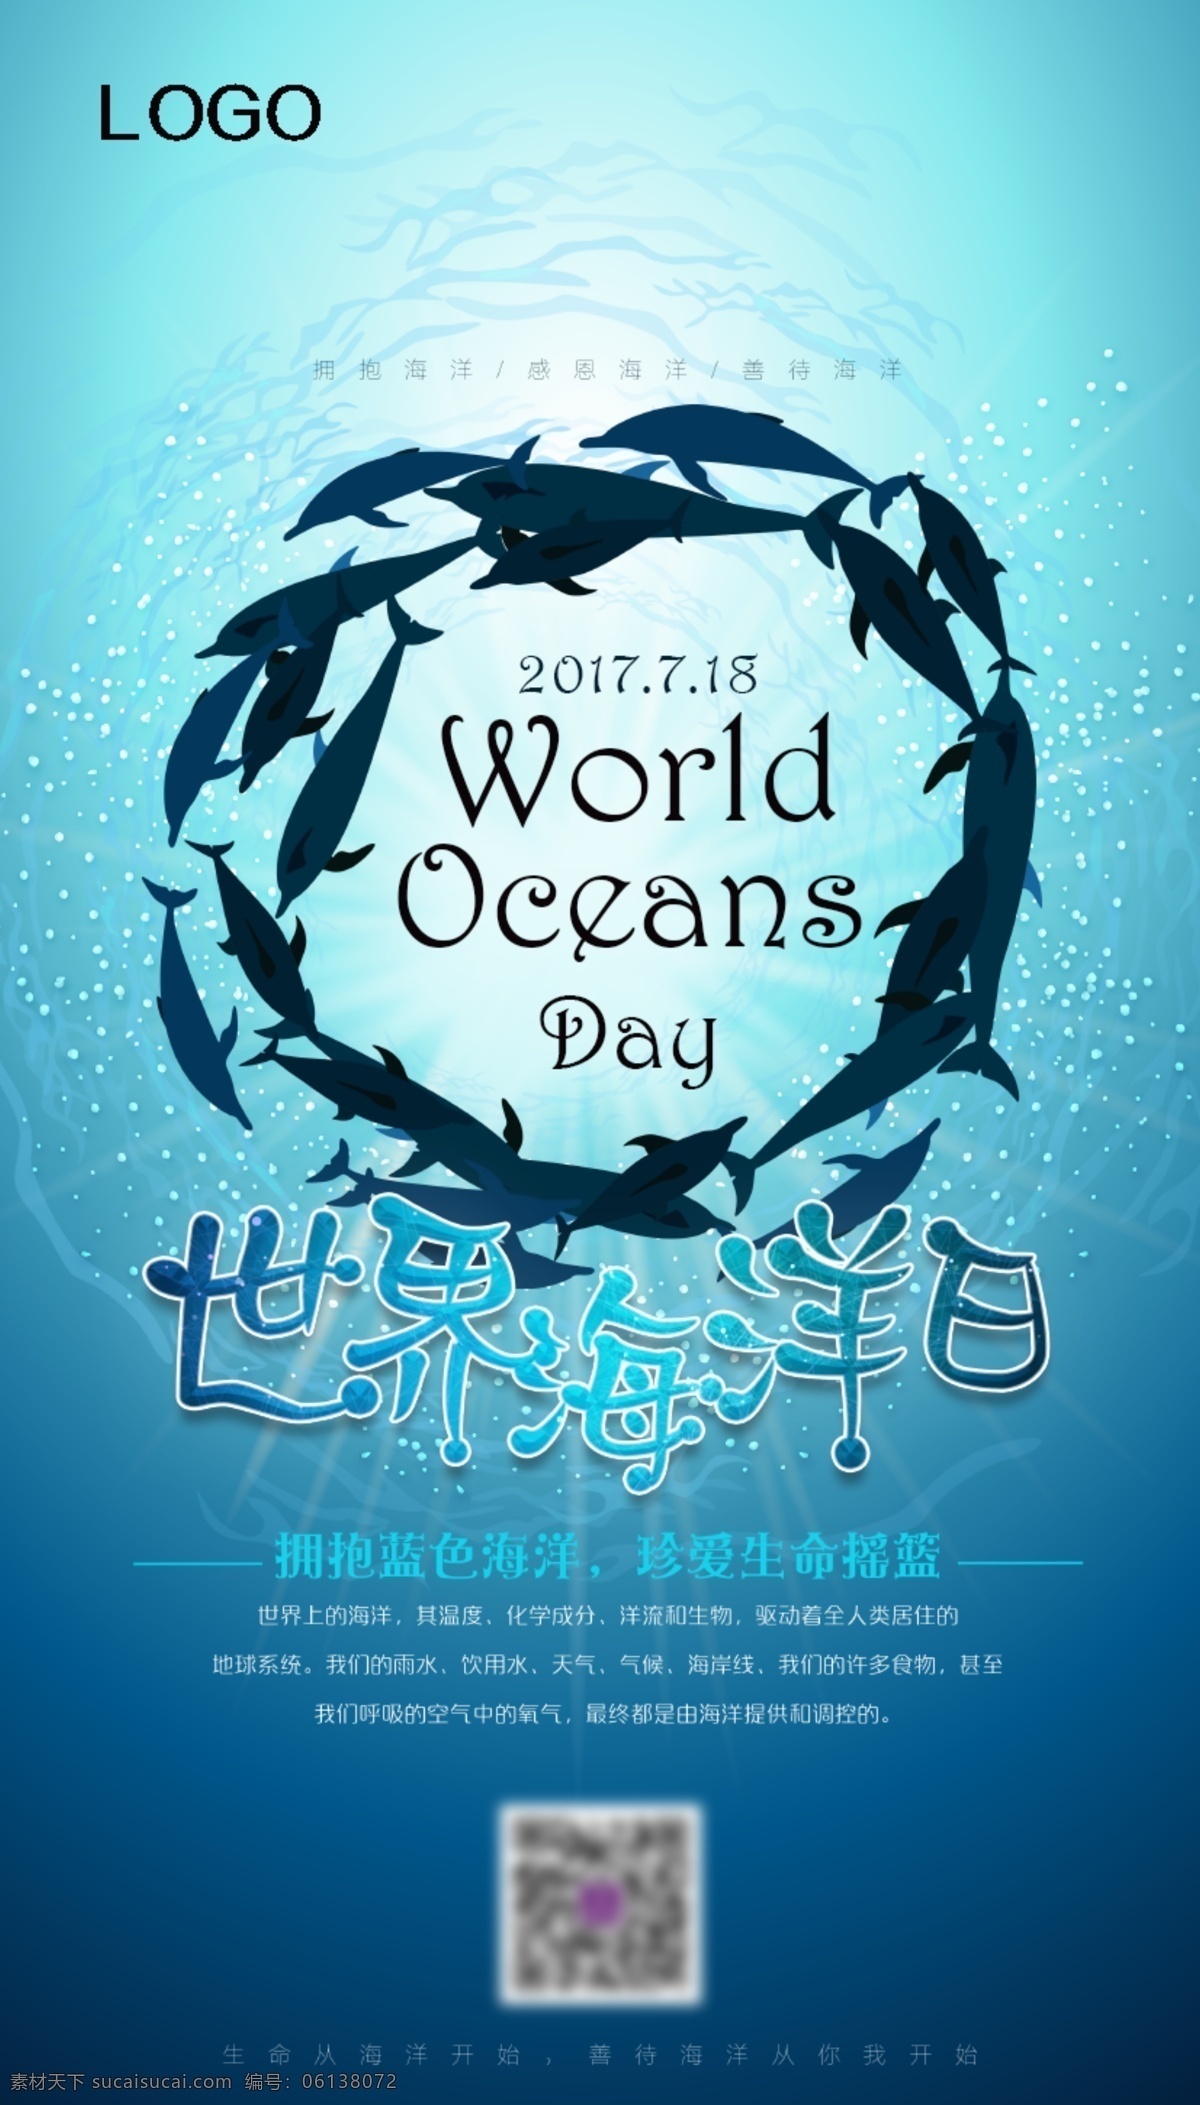 蓝色 海洋 h5 海报 蓝色海洋 世界海洋日 海豚 大海海报 蓝色海报 h5设计 h5模板 微信